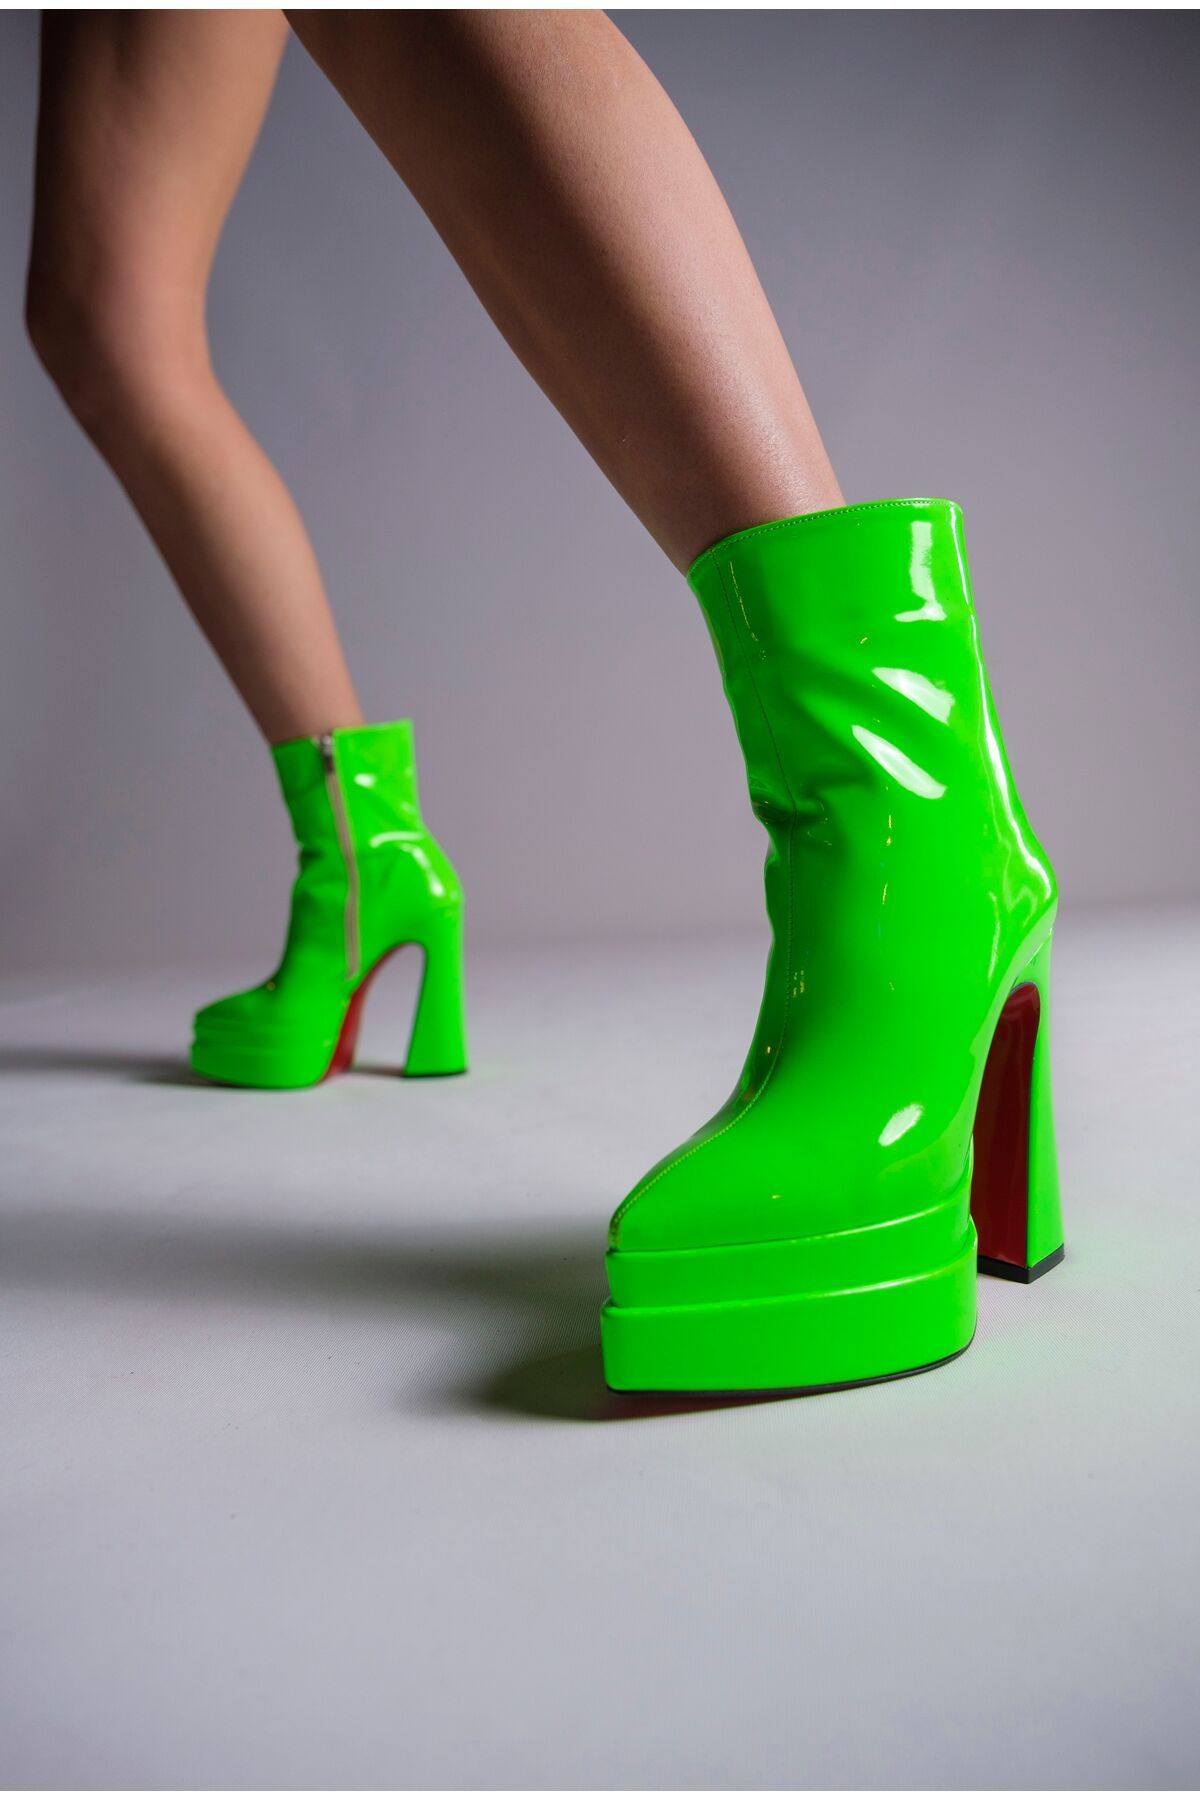 AZALEA WANG Women Neon Green Reggie Studded Platform Heels y2k 90s Size 10  | eBay